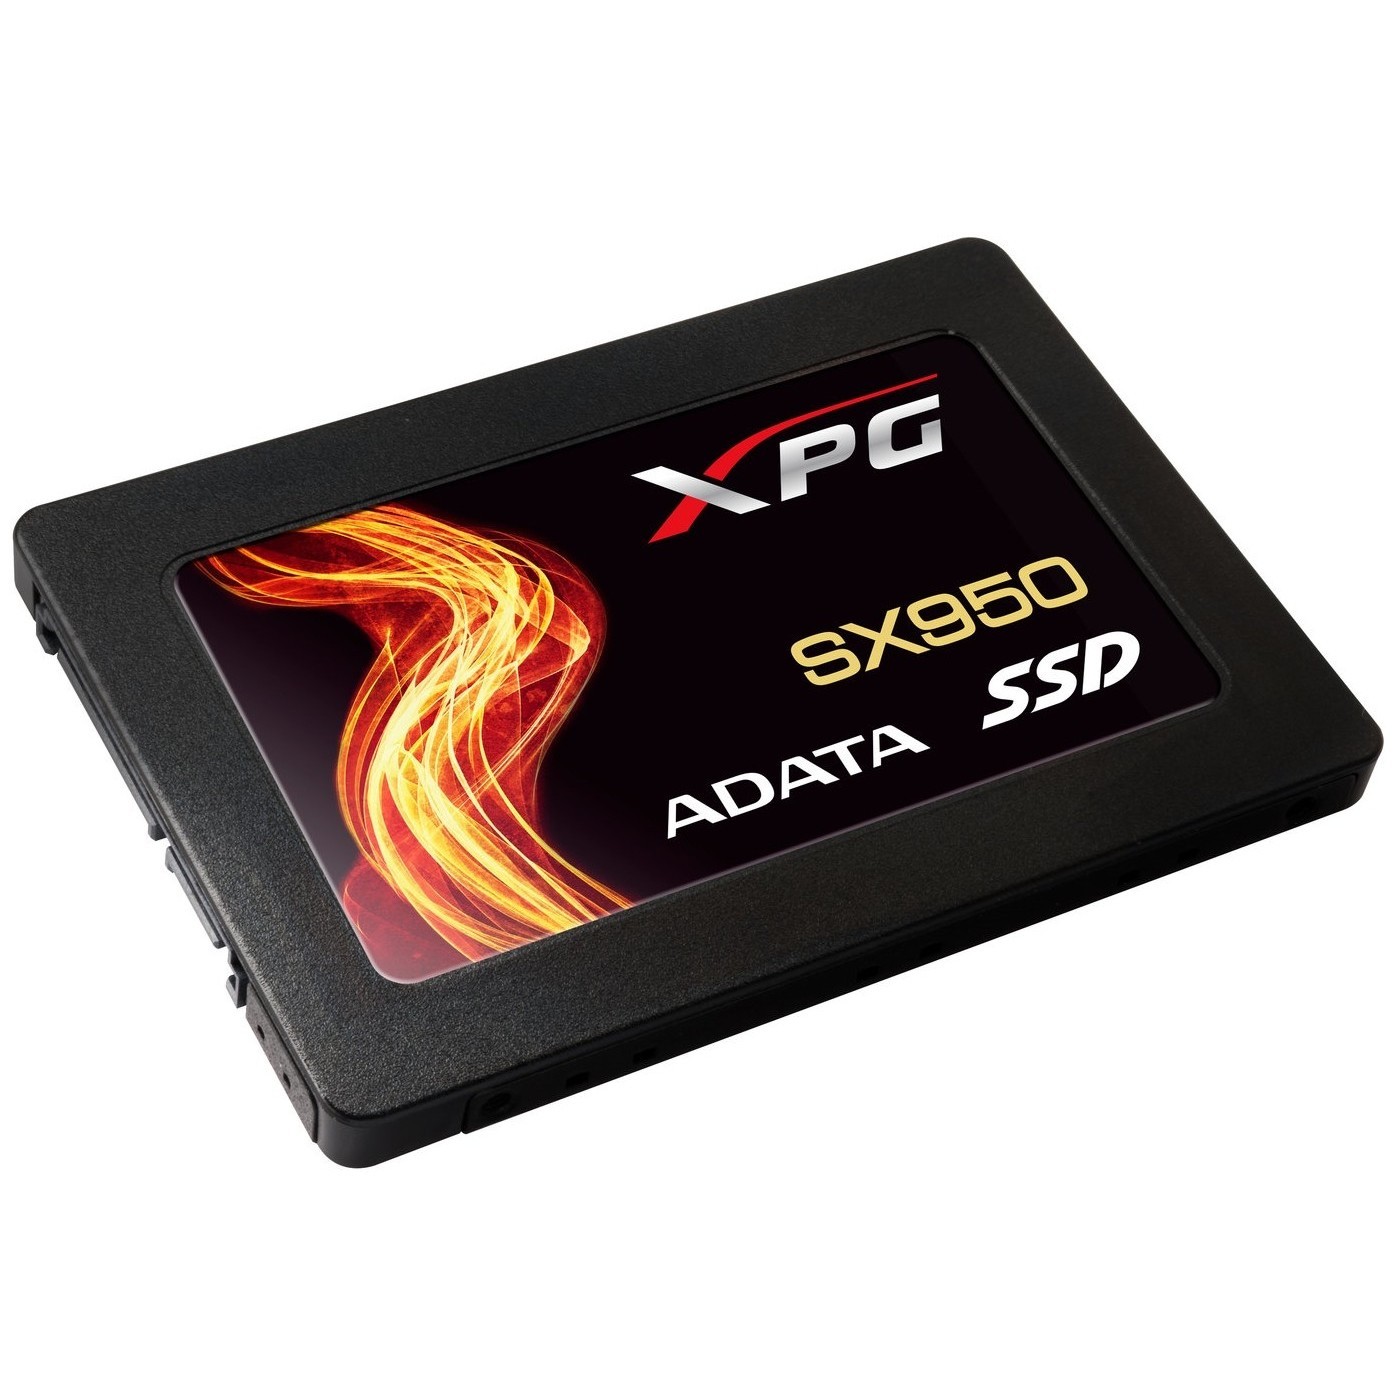 Твердотельный накопитель ADATA XPG sx950 240gb. Твердотельный накопитель ADATA XPG sx950 960gb. SSD A data XPG. Внутренний SSD накопитель ADATA 960gb.